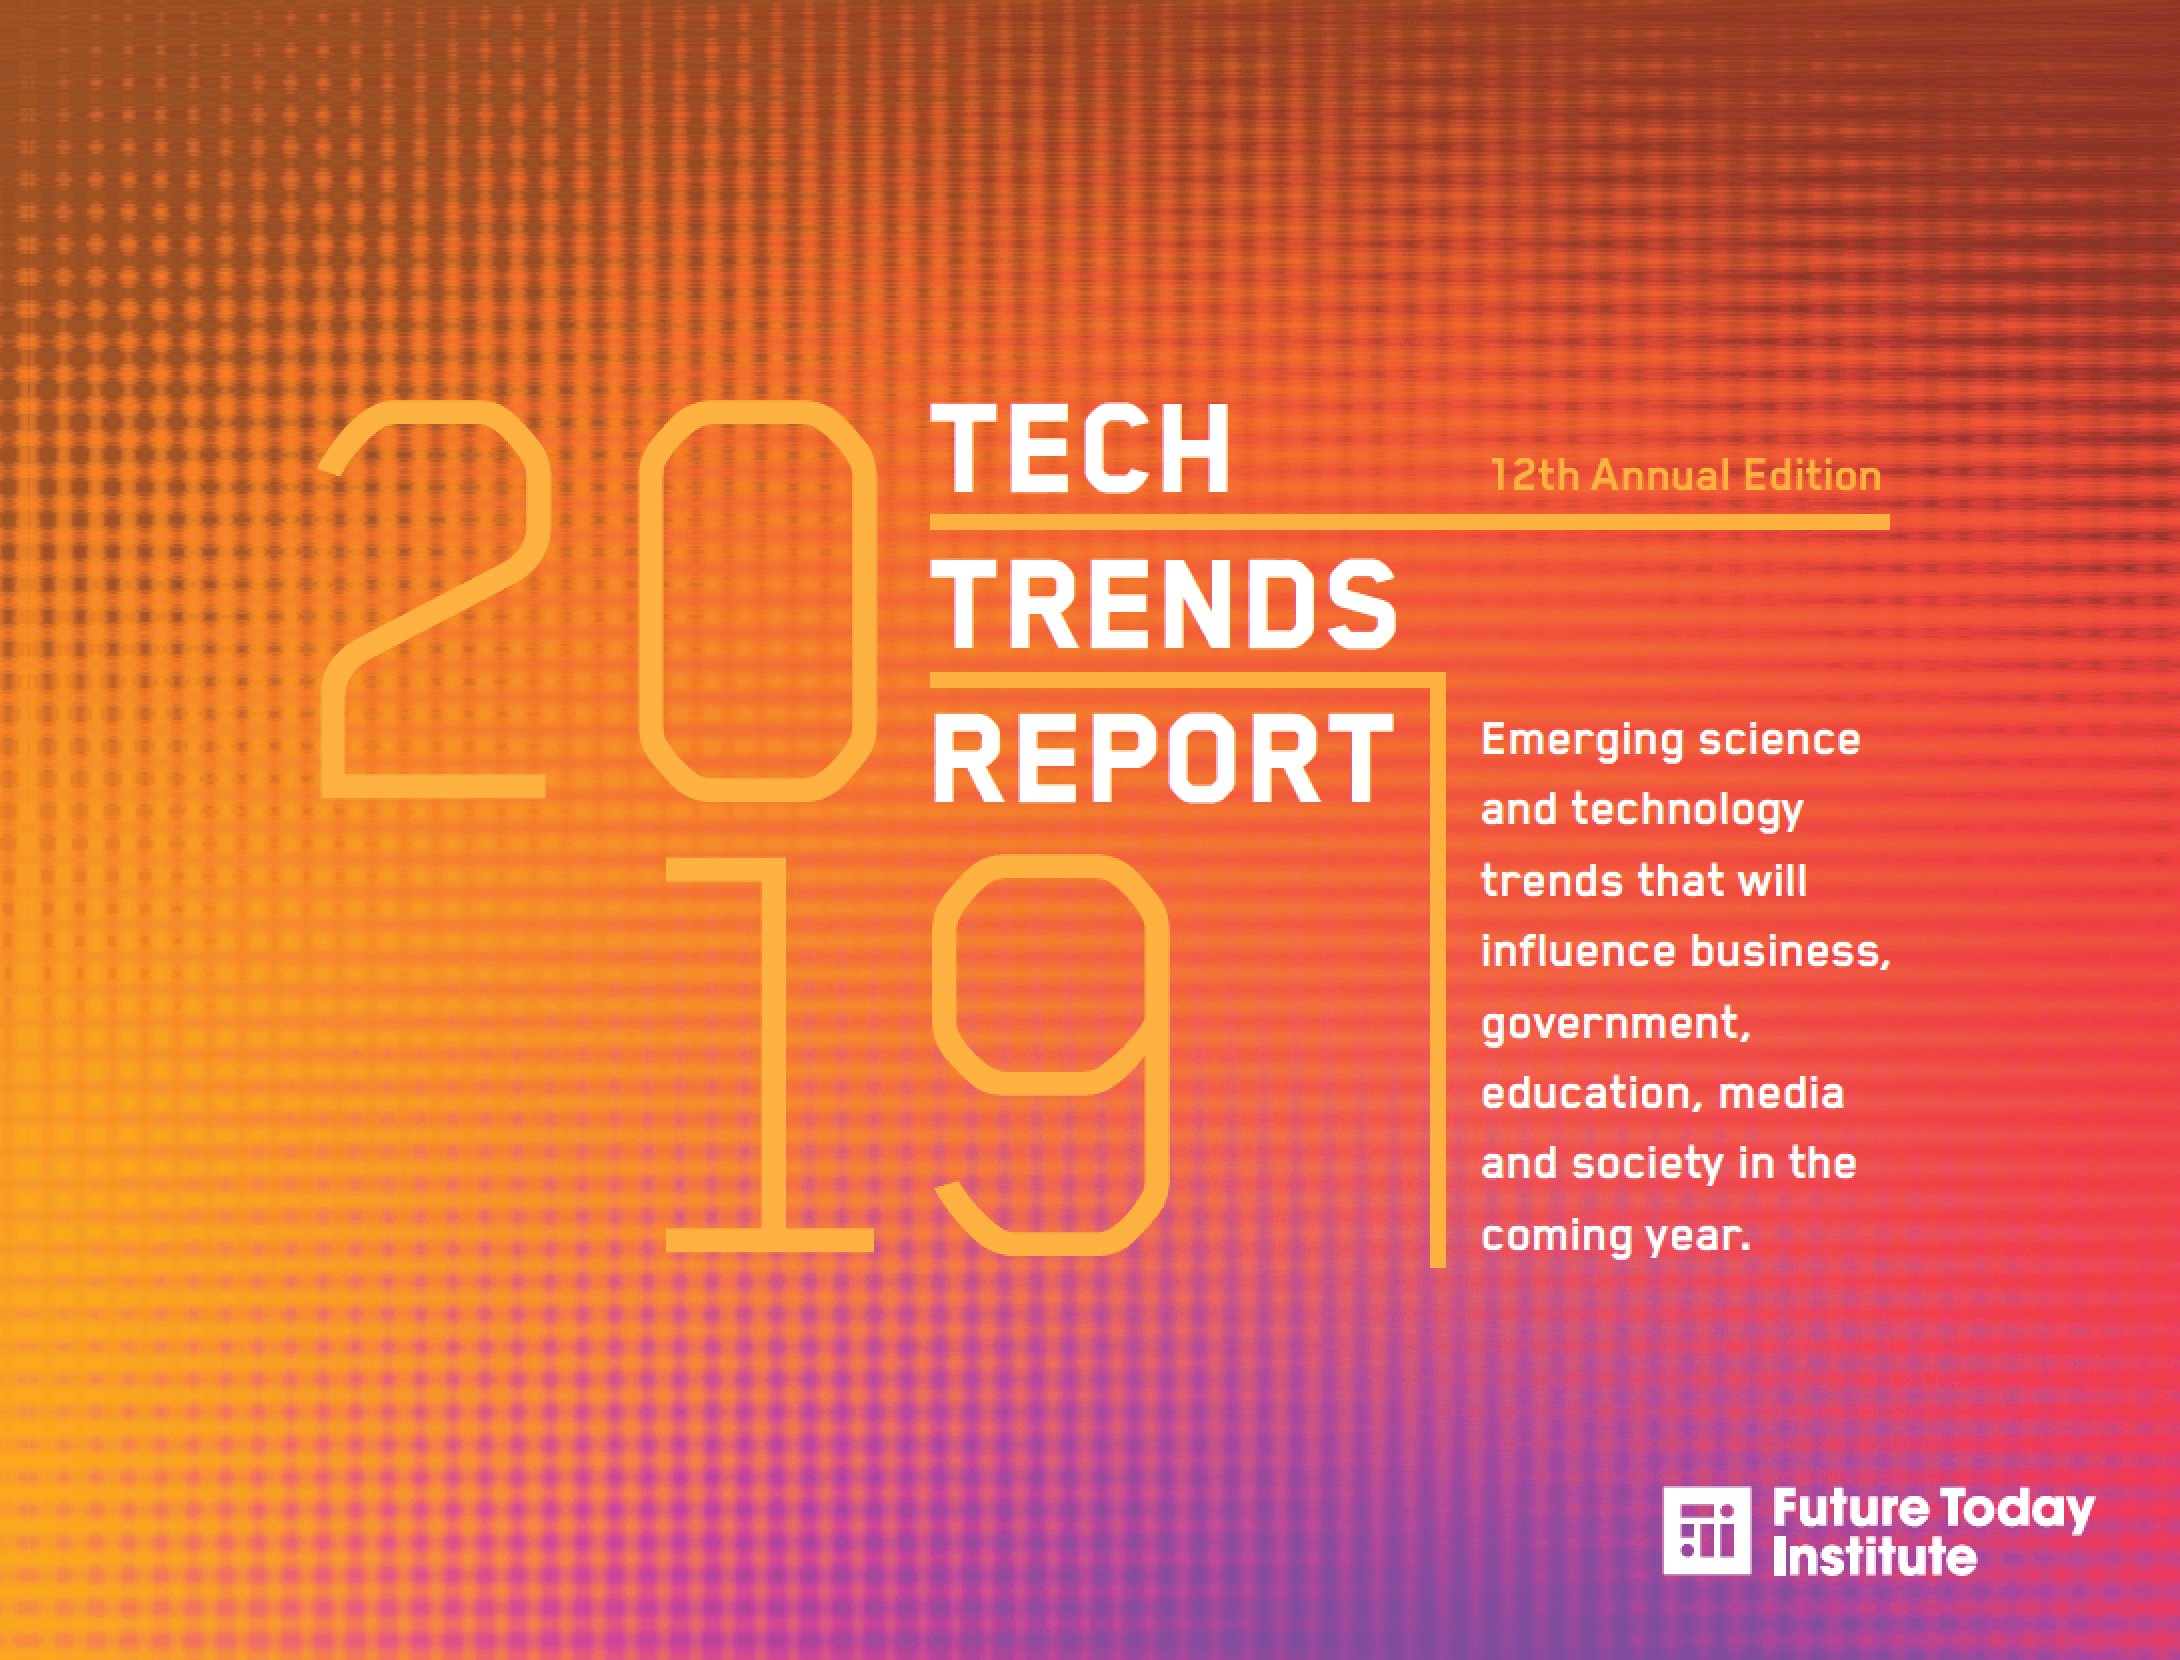 Amy Webb, 2019 Teknoloji Trendleri Raporunu Sundu [SXSW 2019]